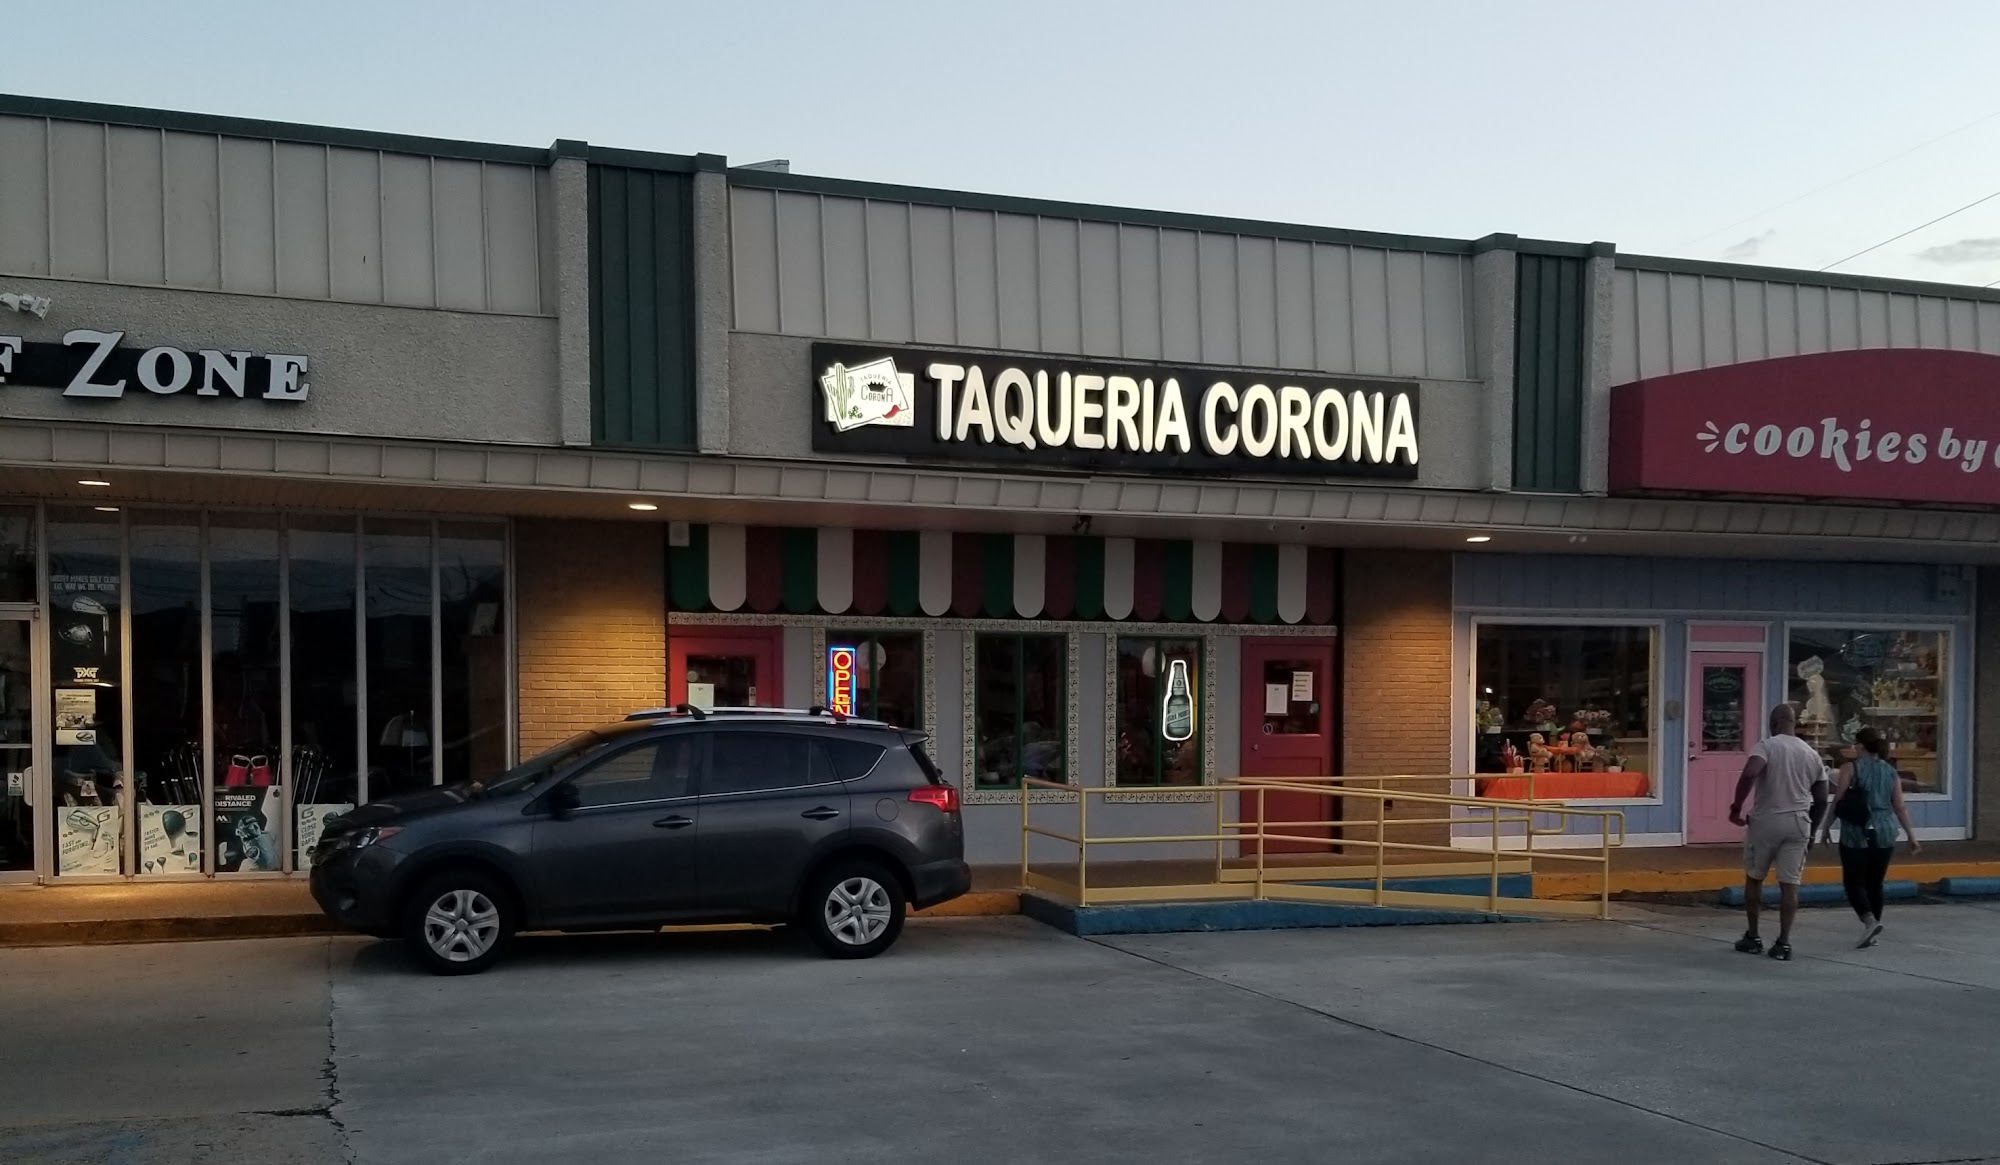 Taqueria Corona